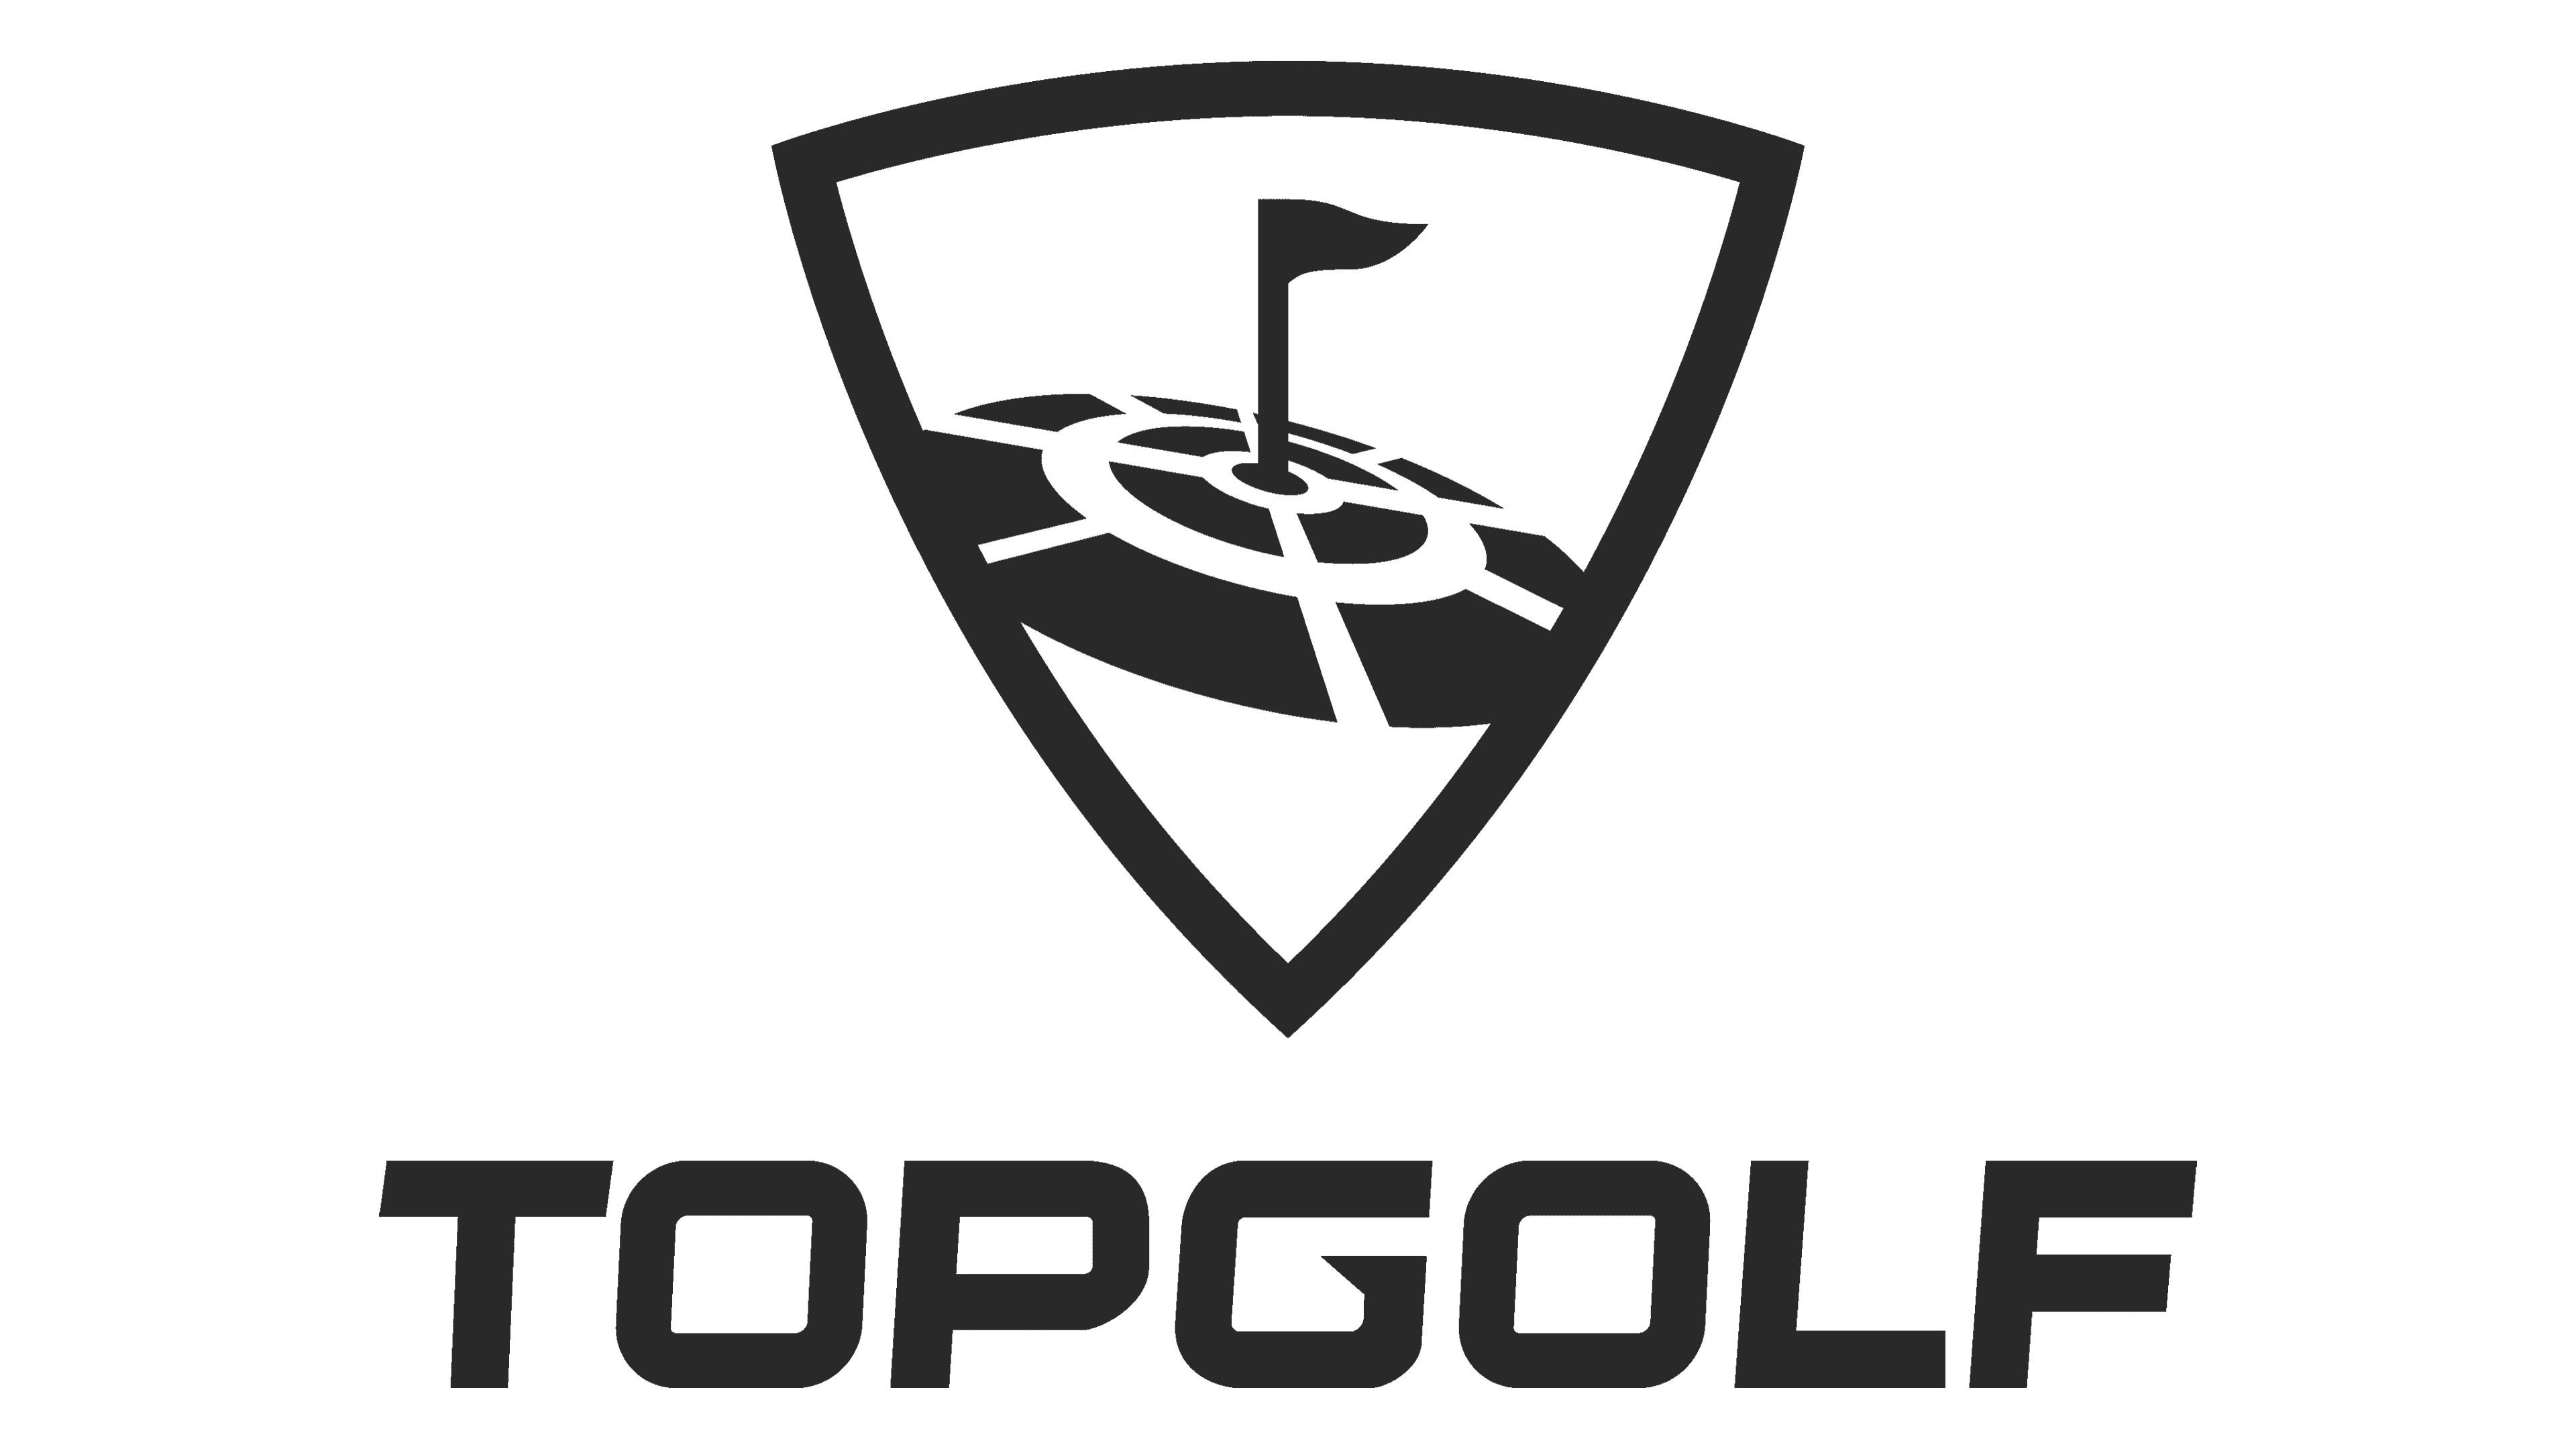 topgolf-logo